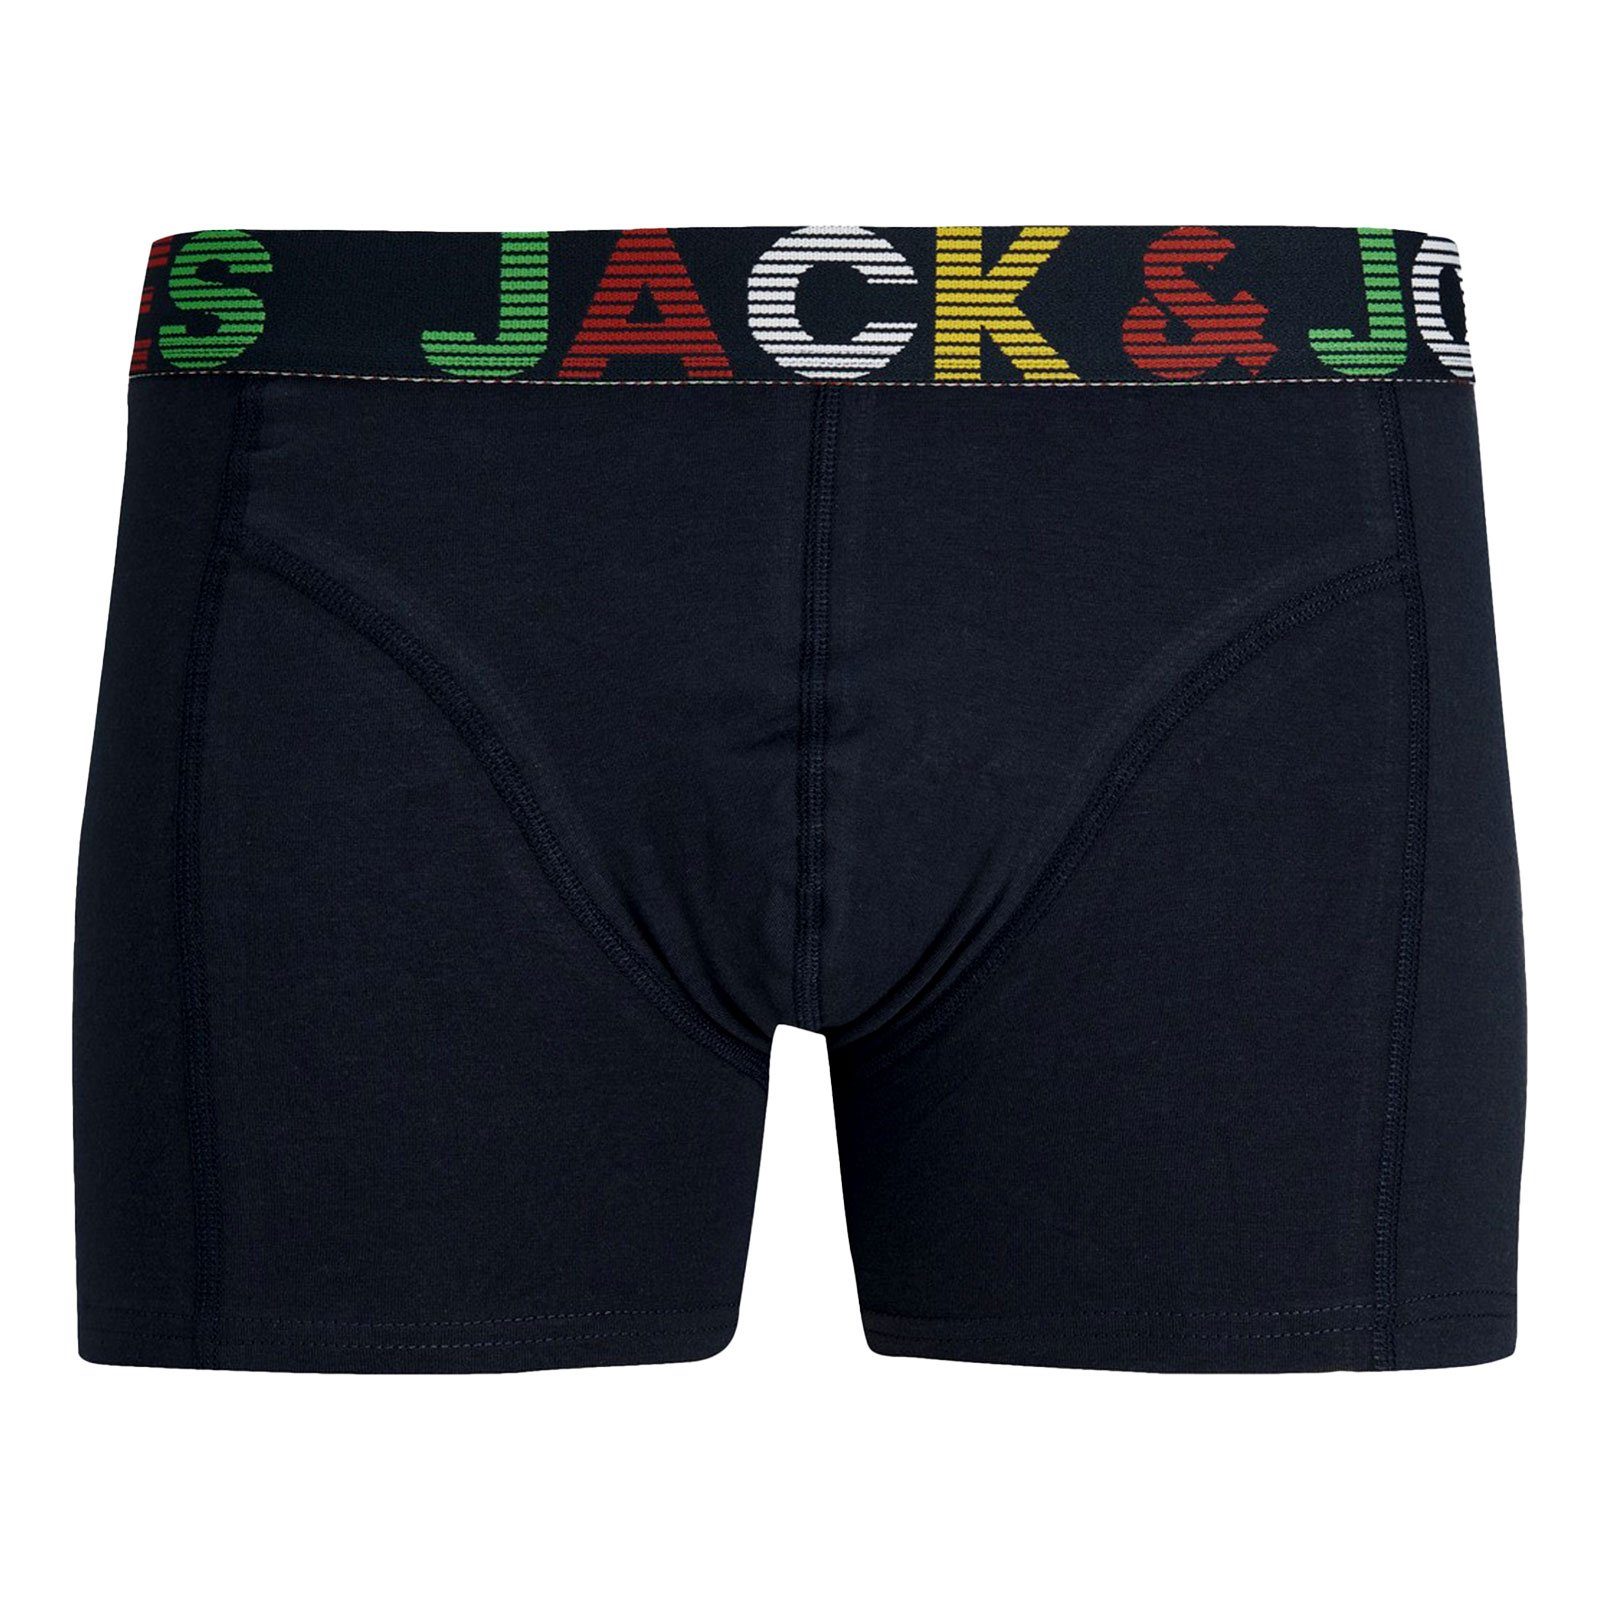 Jack (3-St) Jones Bund Trunk / blaze mit grey navy am dark melange & Markenschriftzug